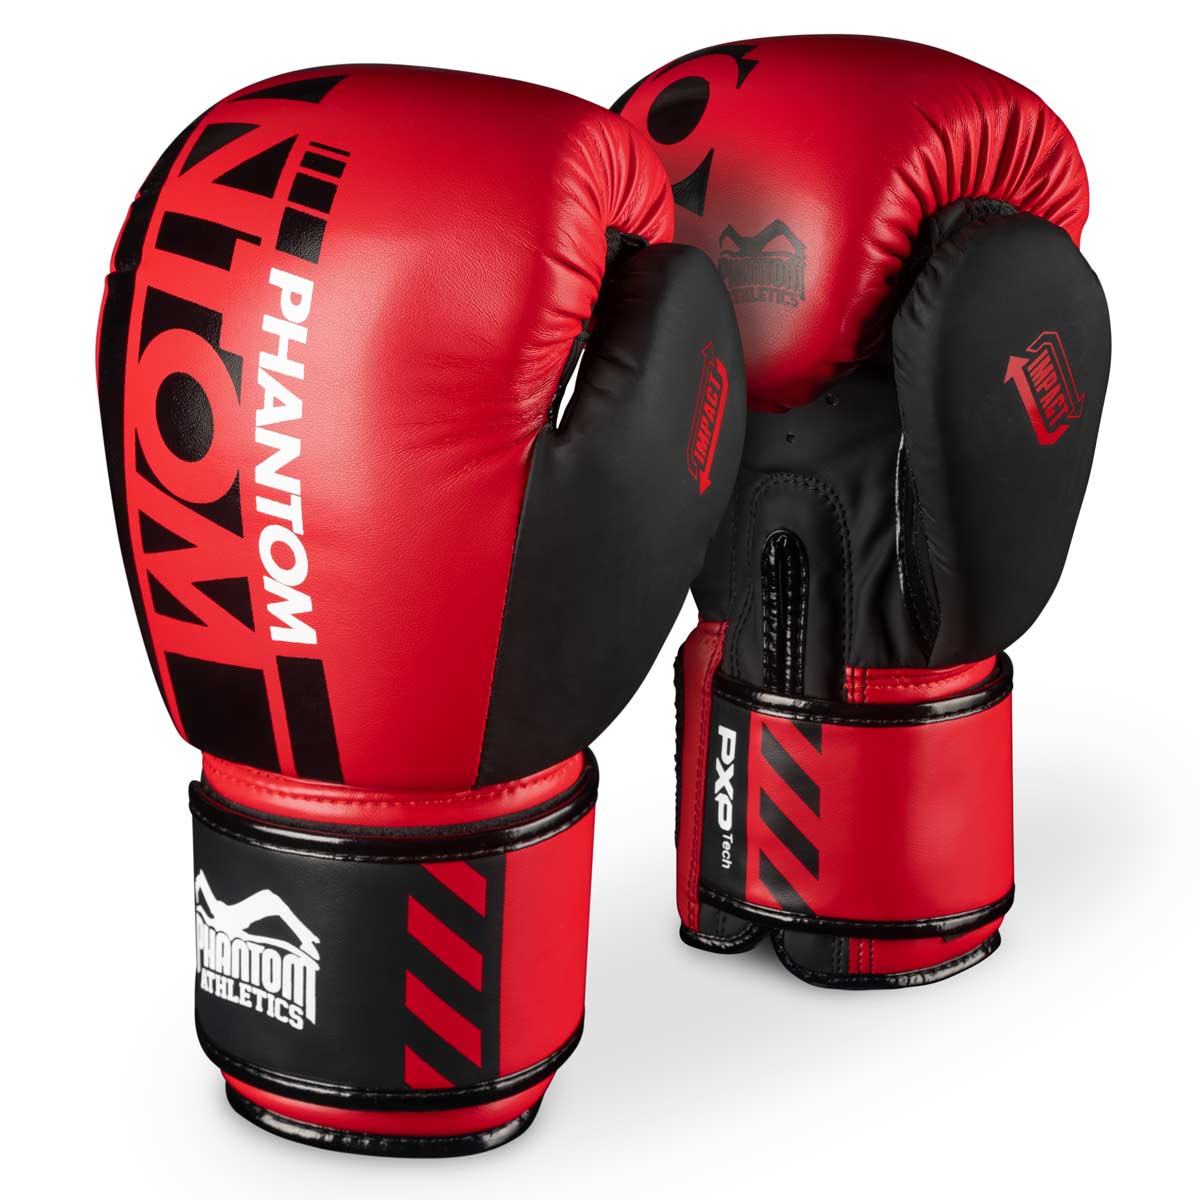 Mănuși de box Phantom APEX în ediția limitată RED. Mănuși perfecte pentru antrenamentul de arte marțiale, cum ar fi MMA, Muay Thai, box thailandez, K1 sau box.